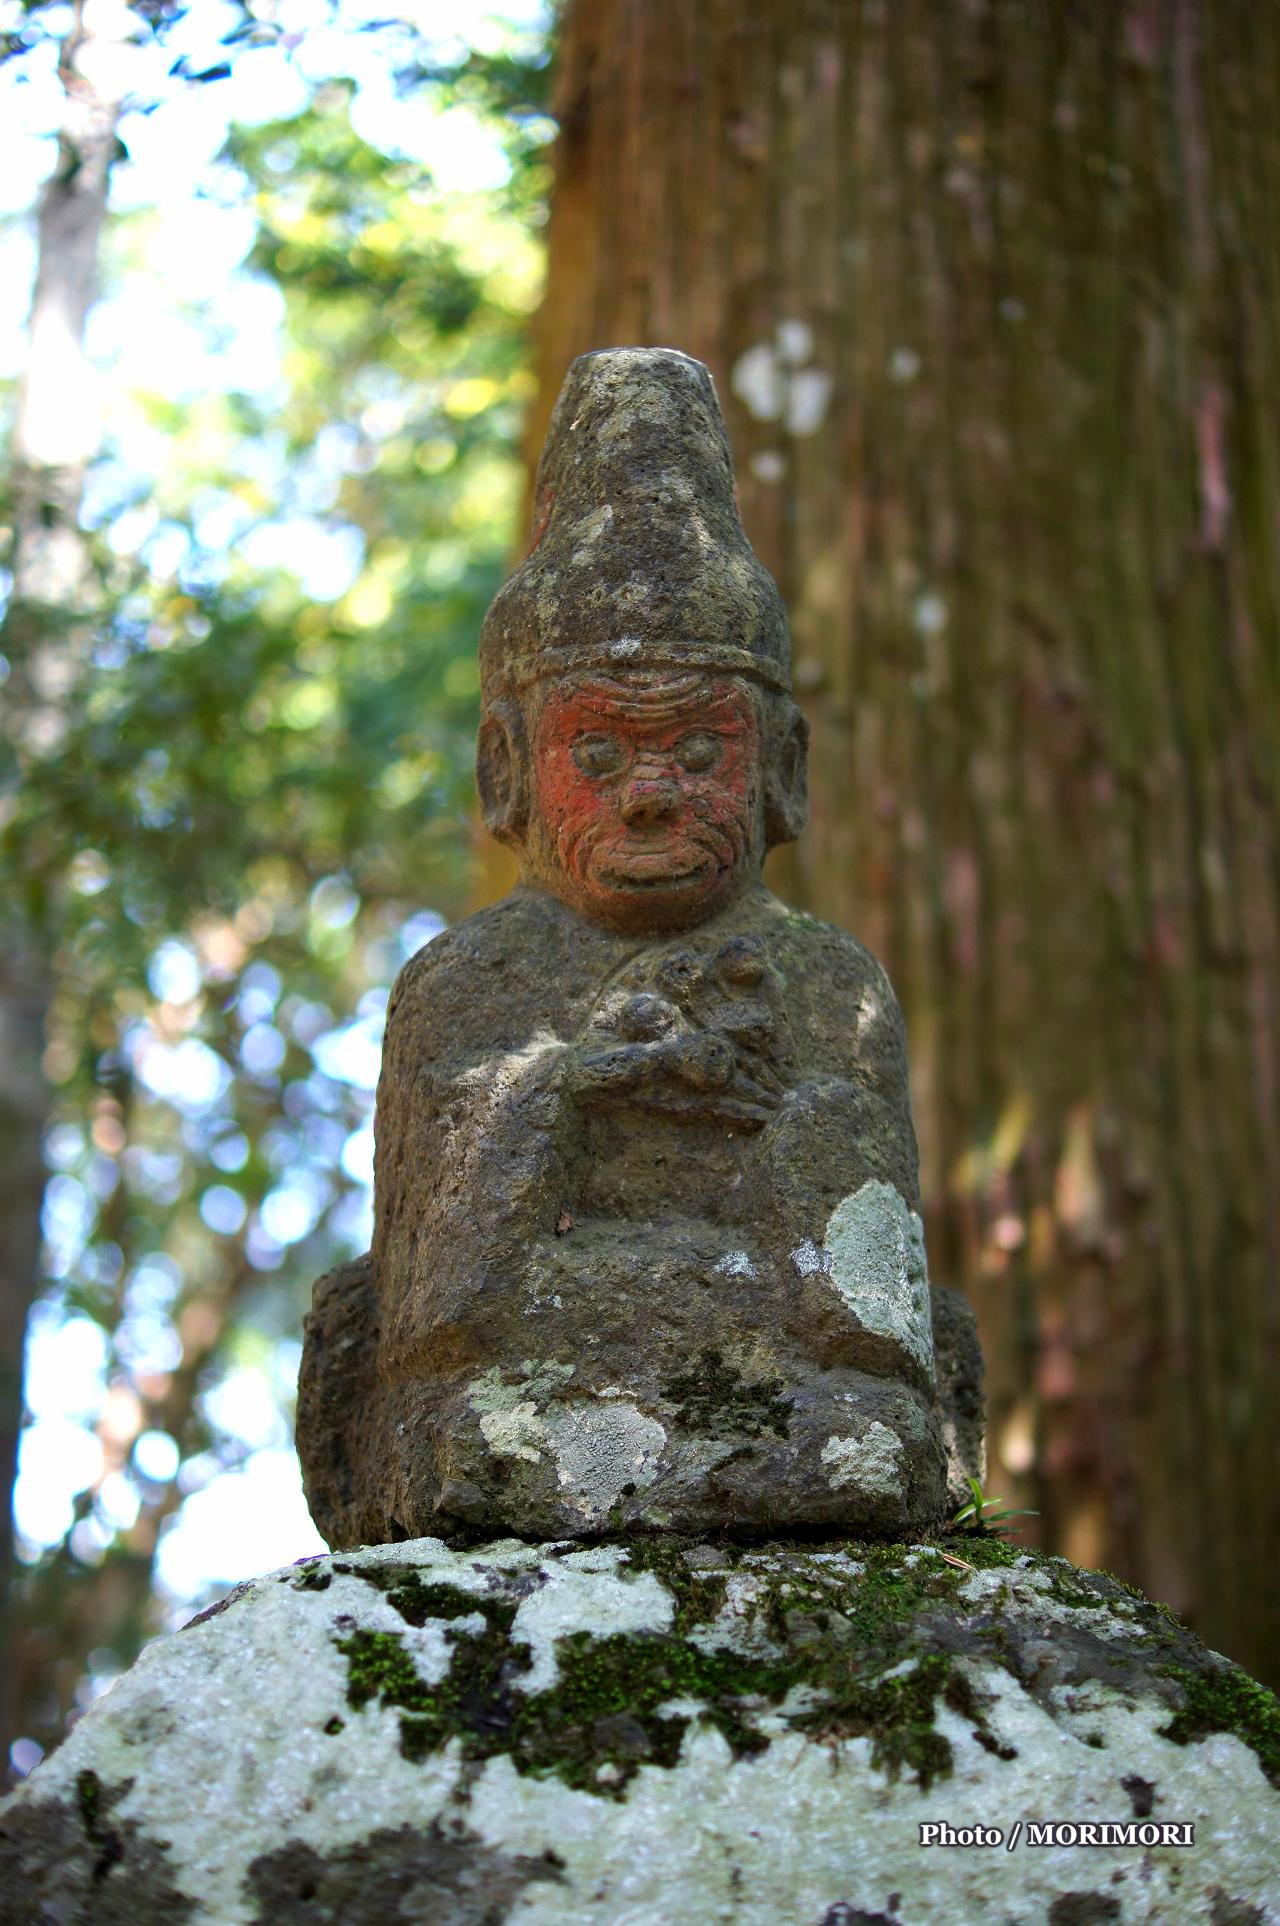 高千穂向山神社参道の灯篭上の猿の石像